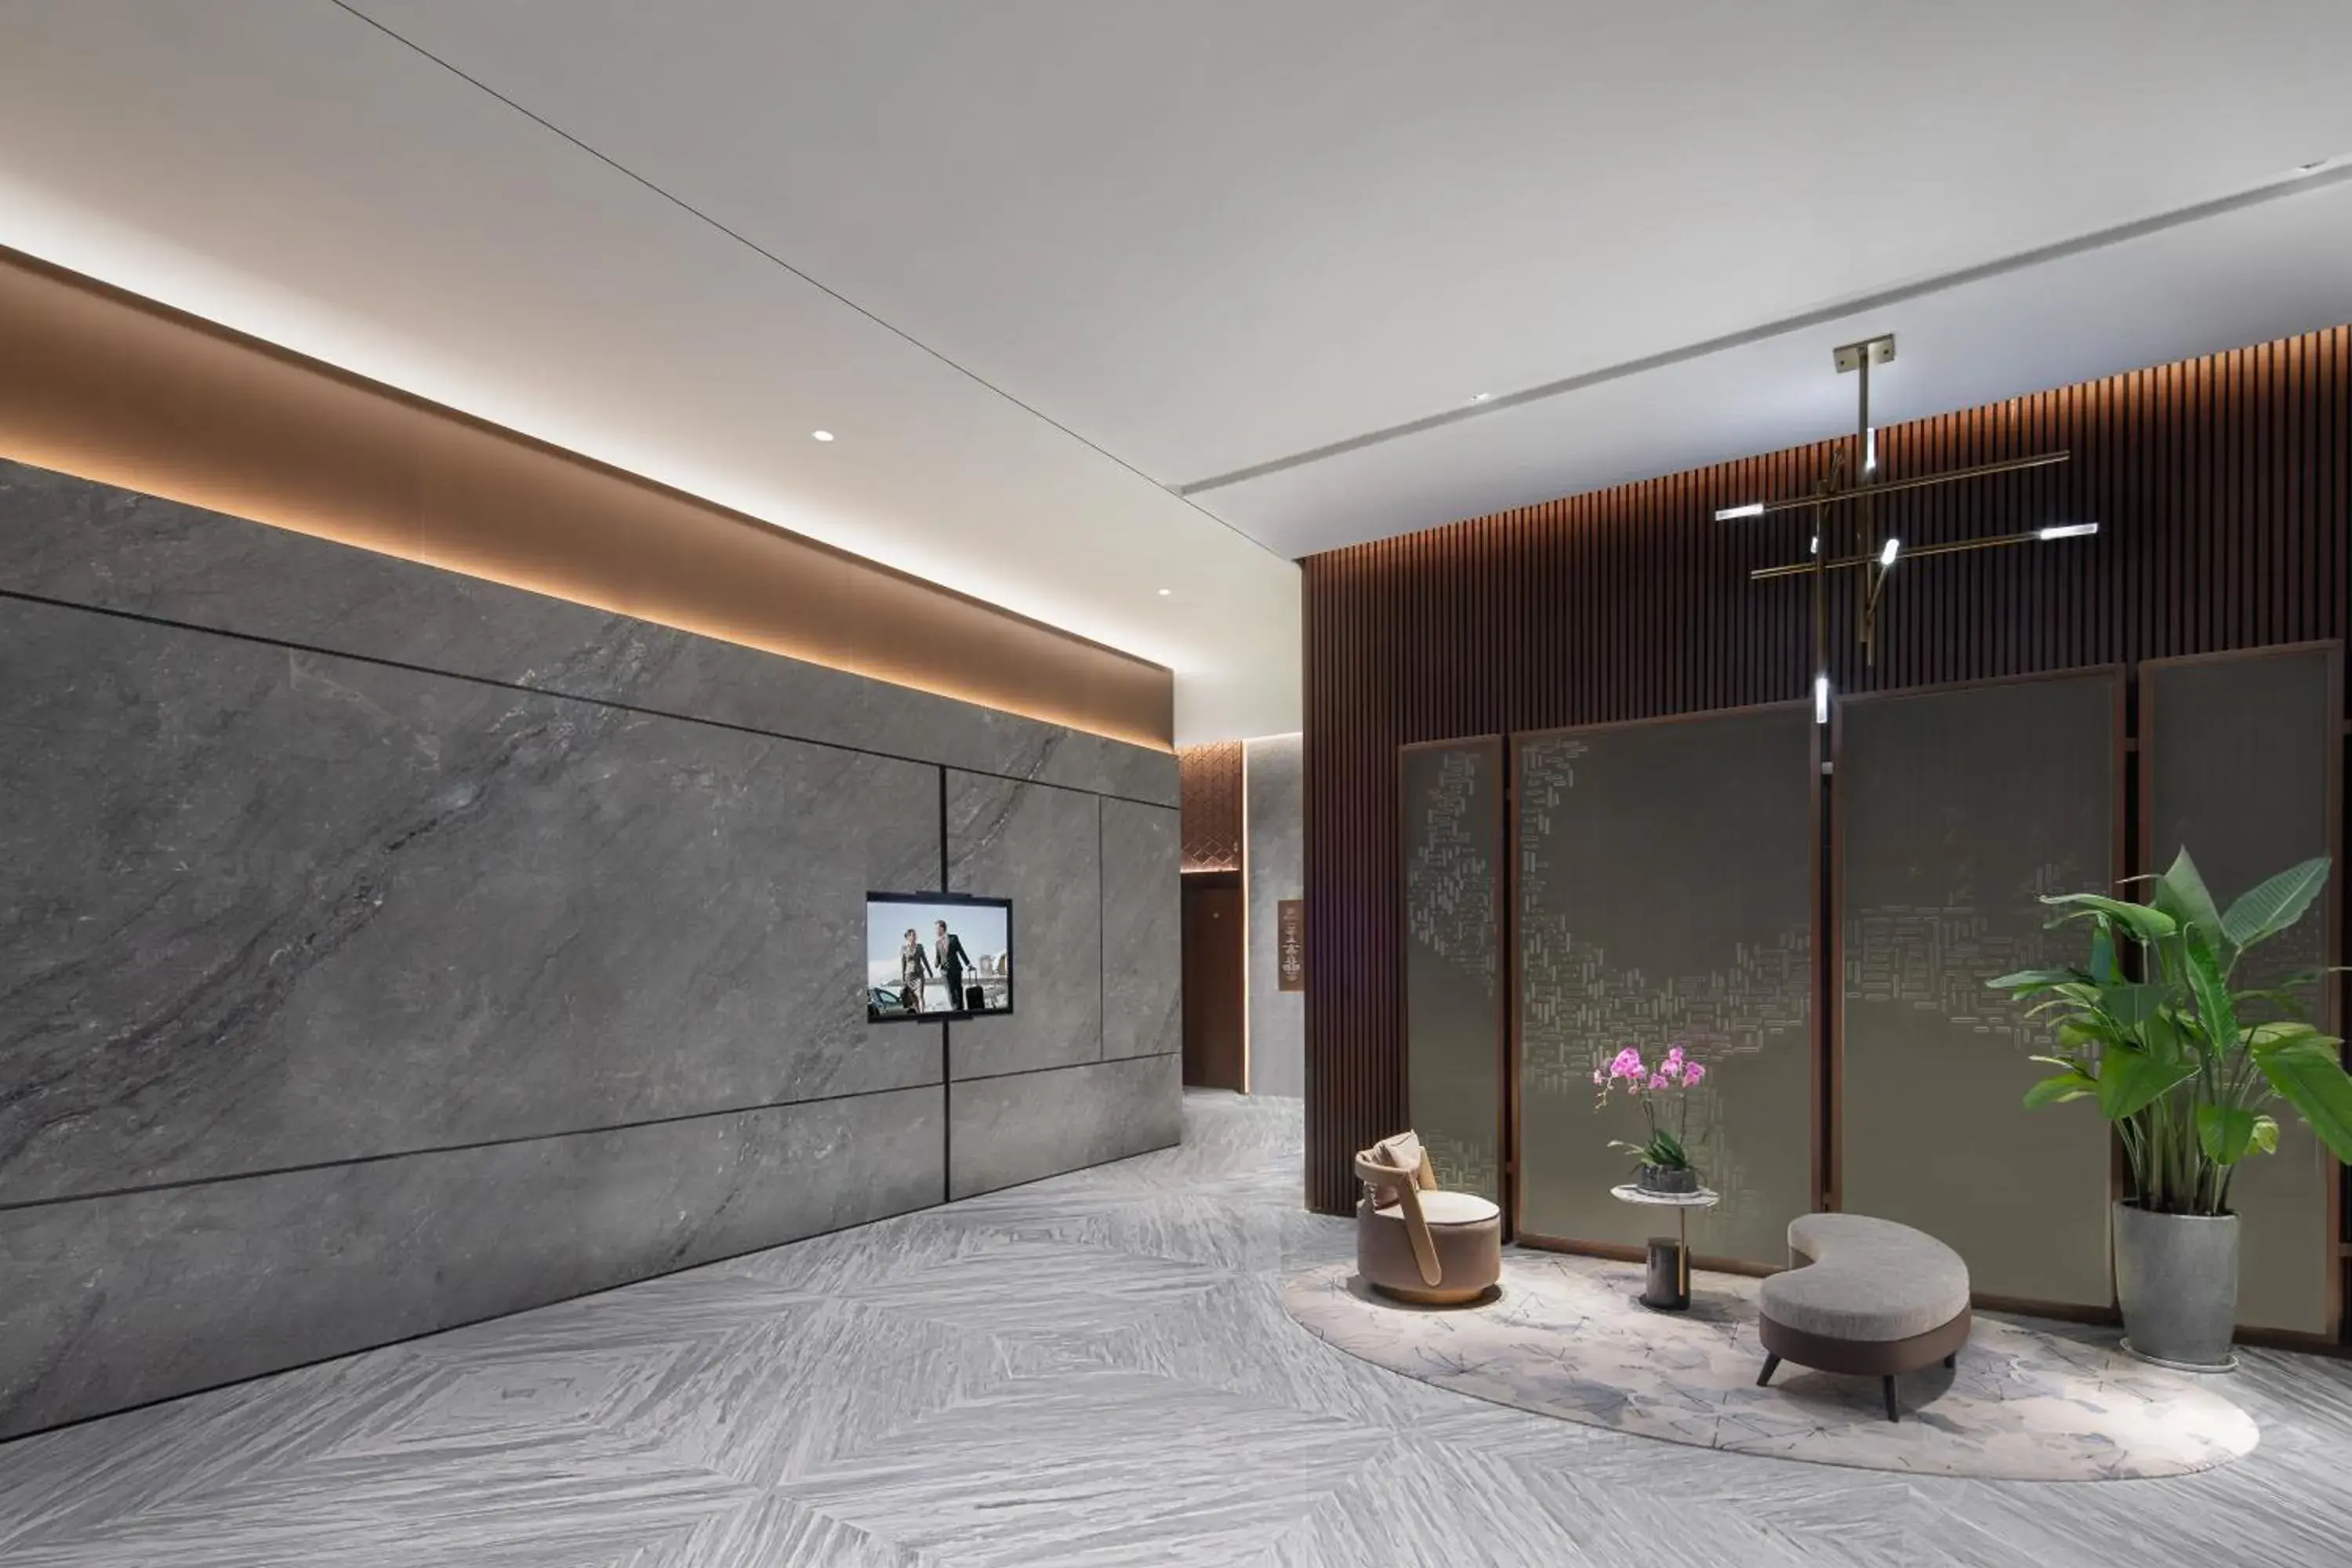 Lobby or reception, Bathroom in Ascott ICC Guangzhou